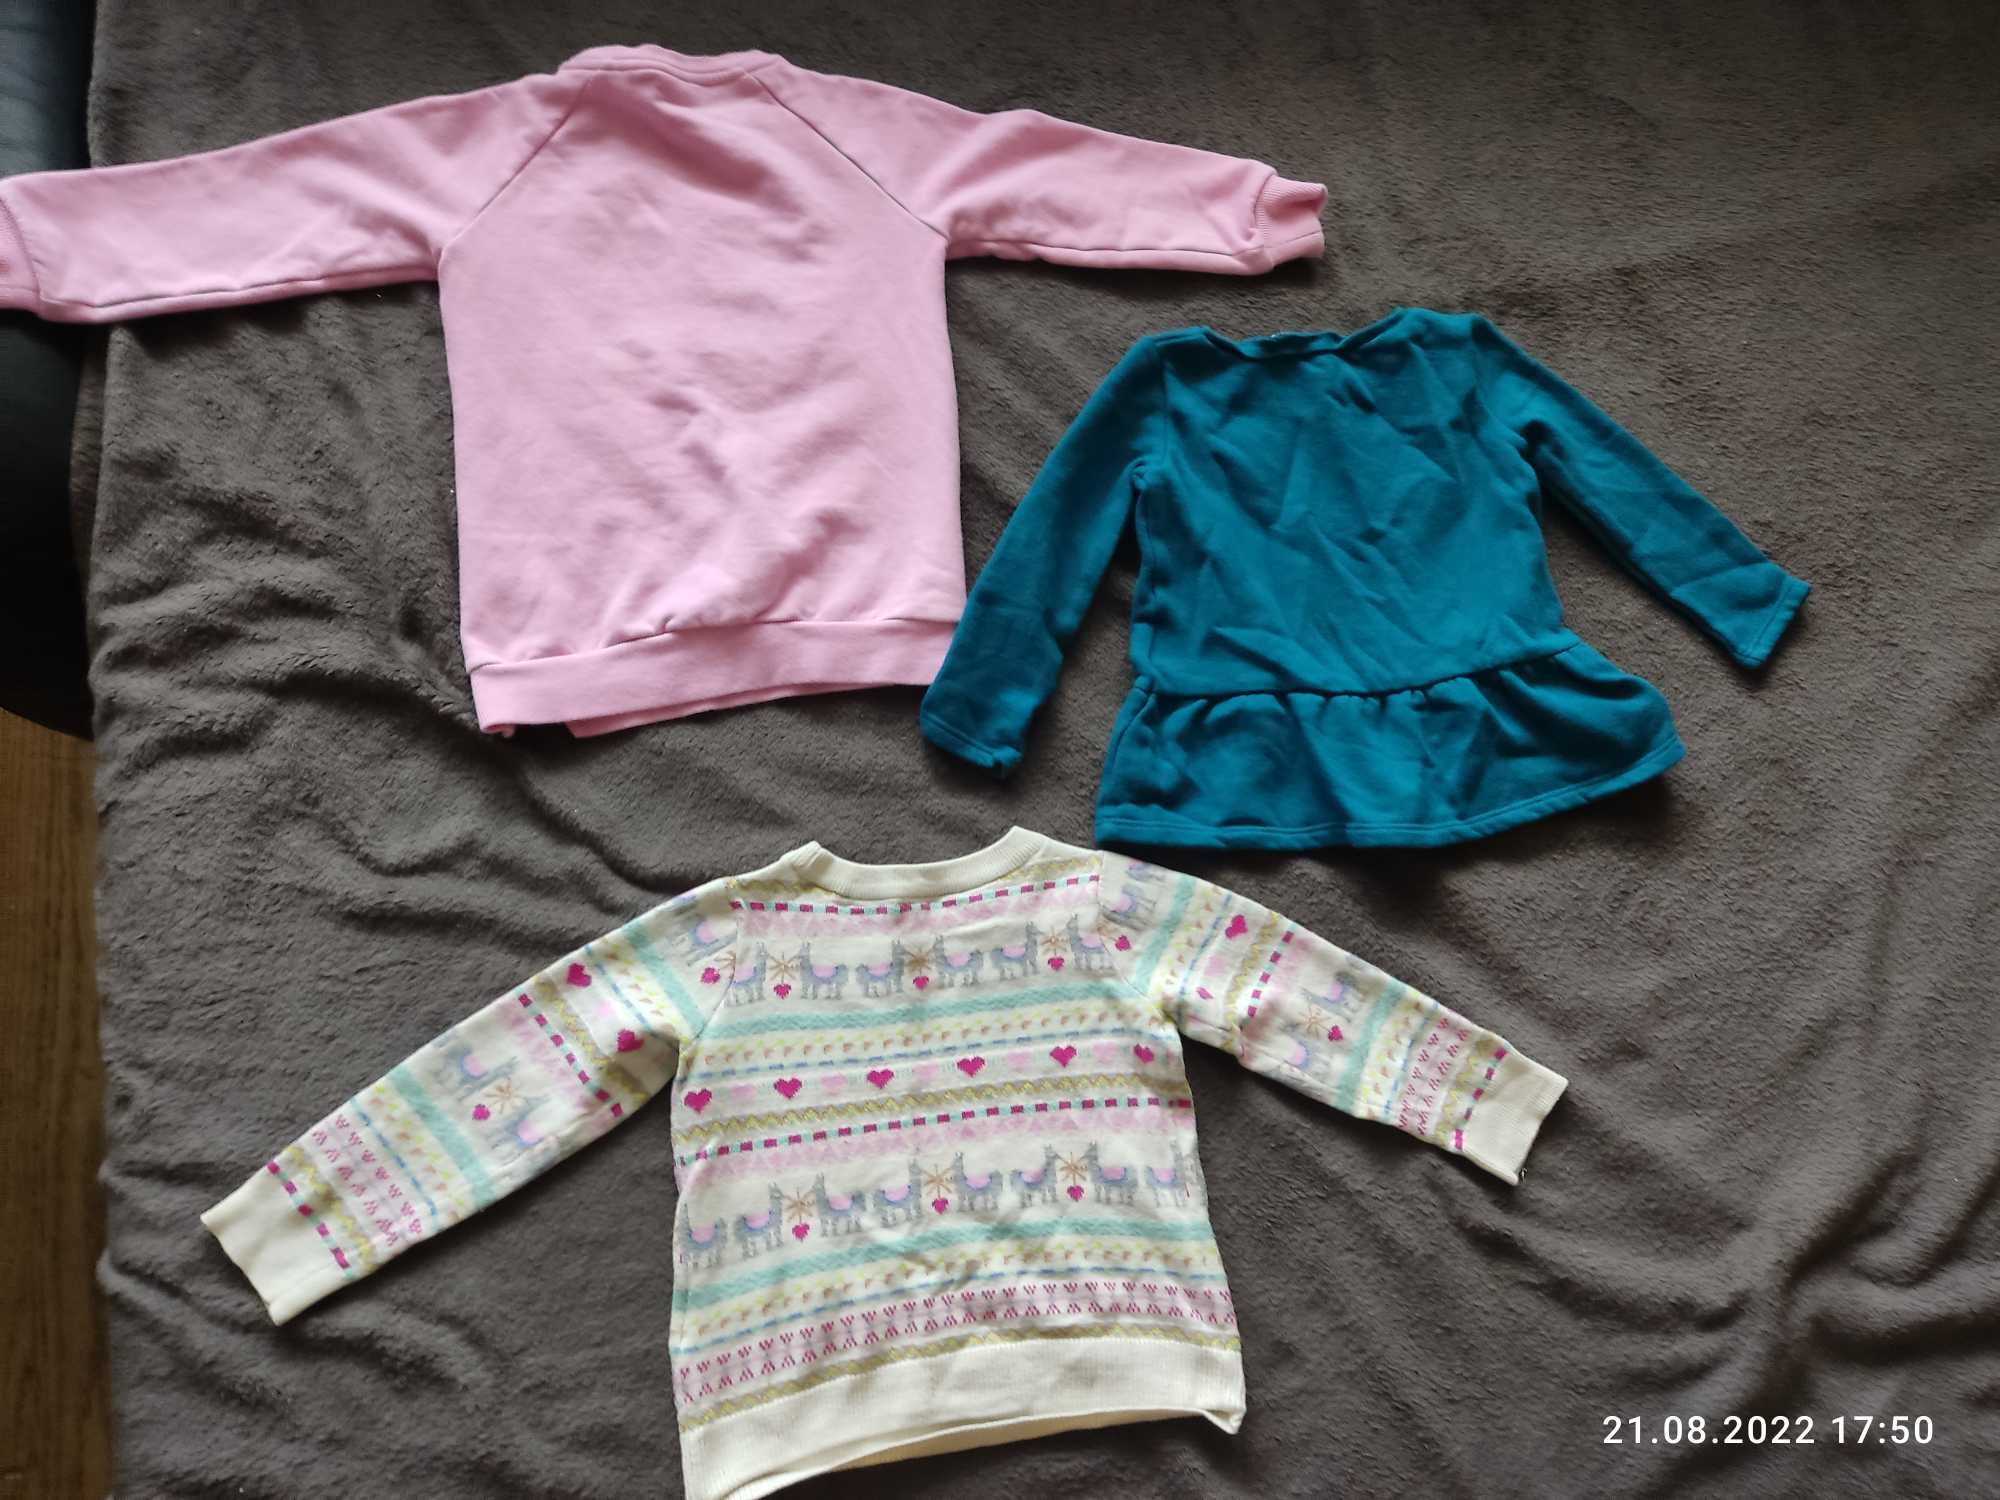 Bluza, sweterek, tunika dla dziewczynki w wieku 2 lat (rozmiar 92)